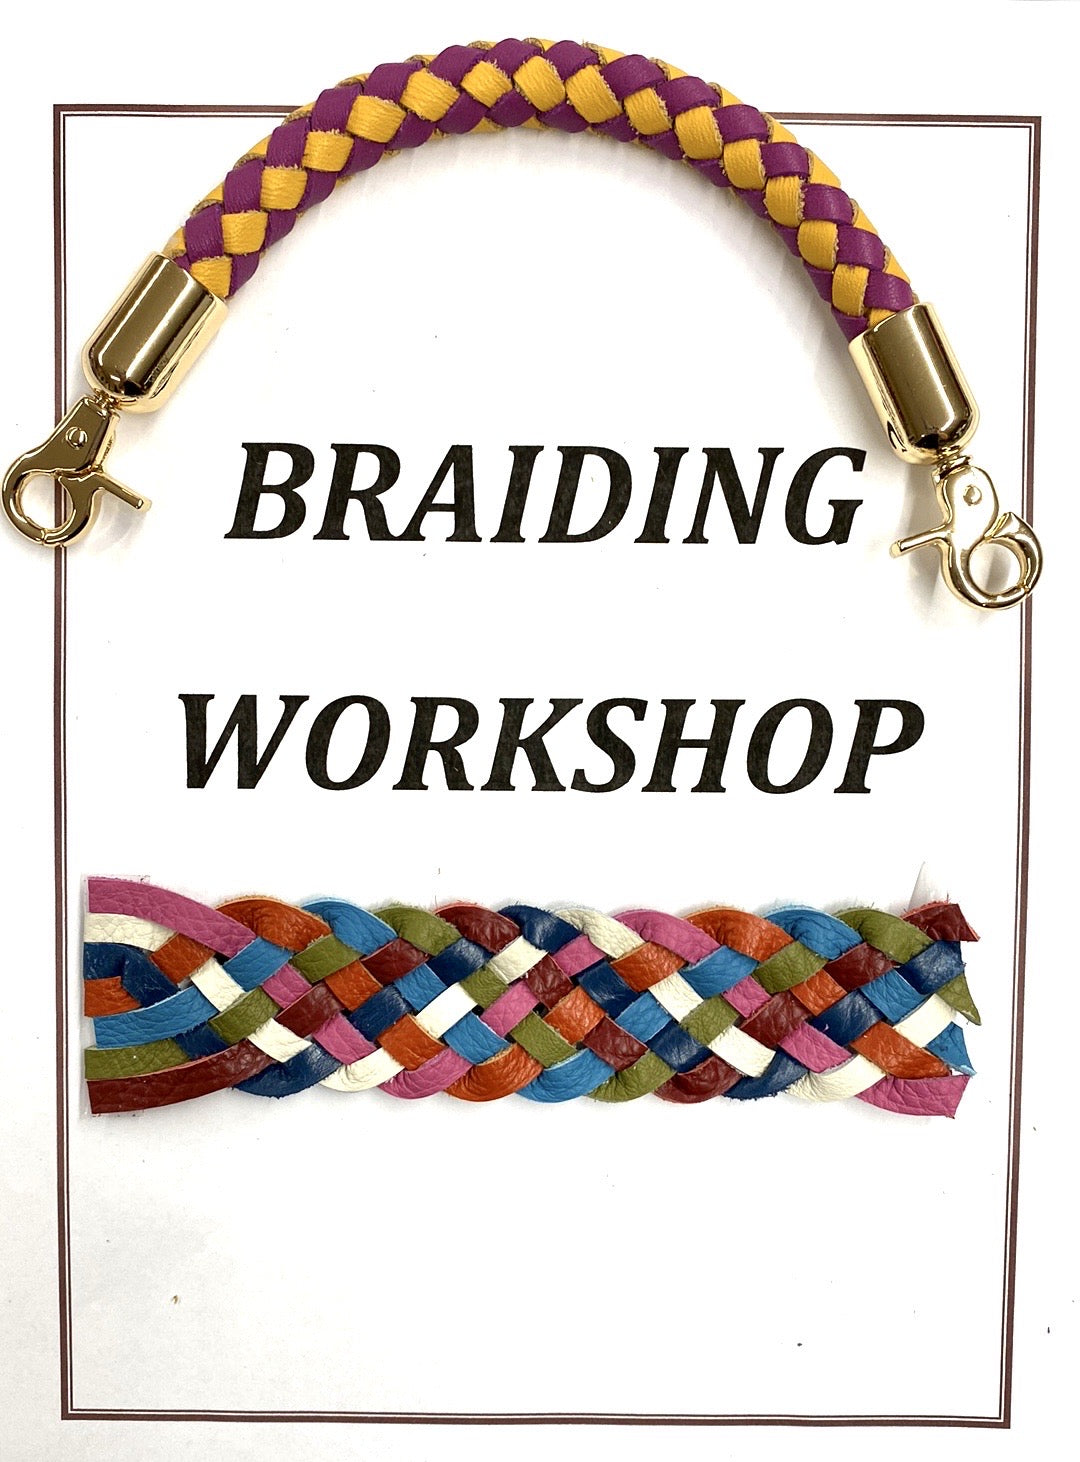 Braiding Techniques Workshop - Session 1